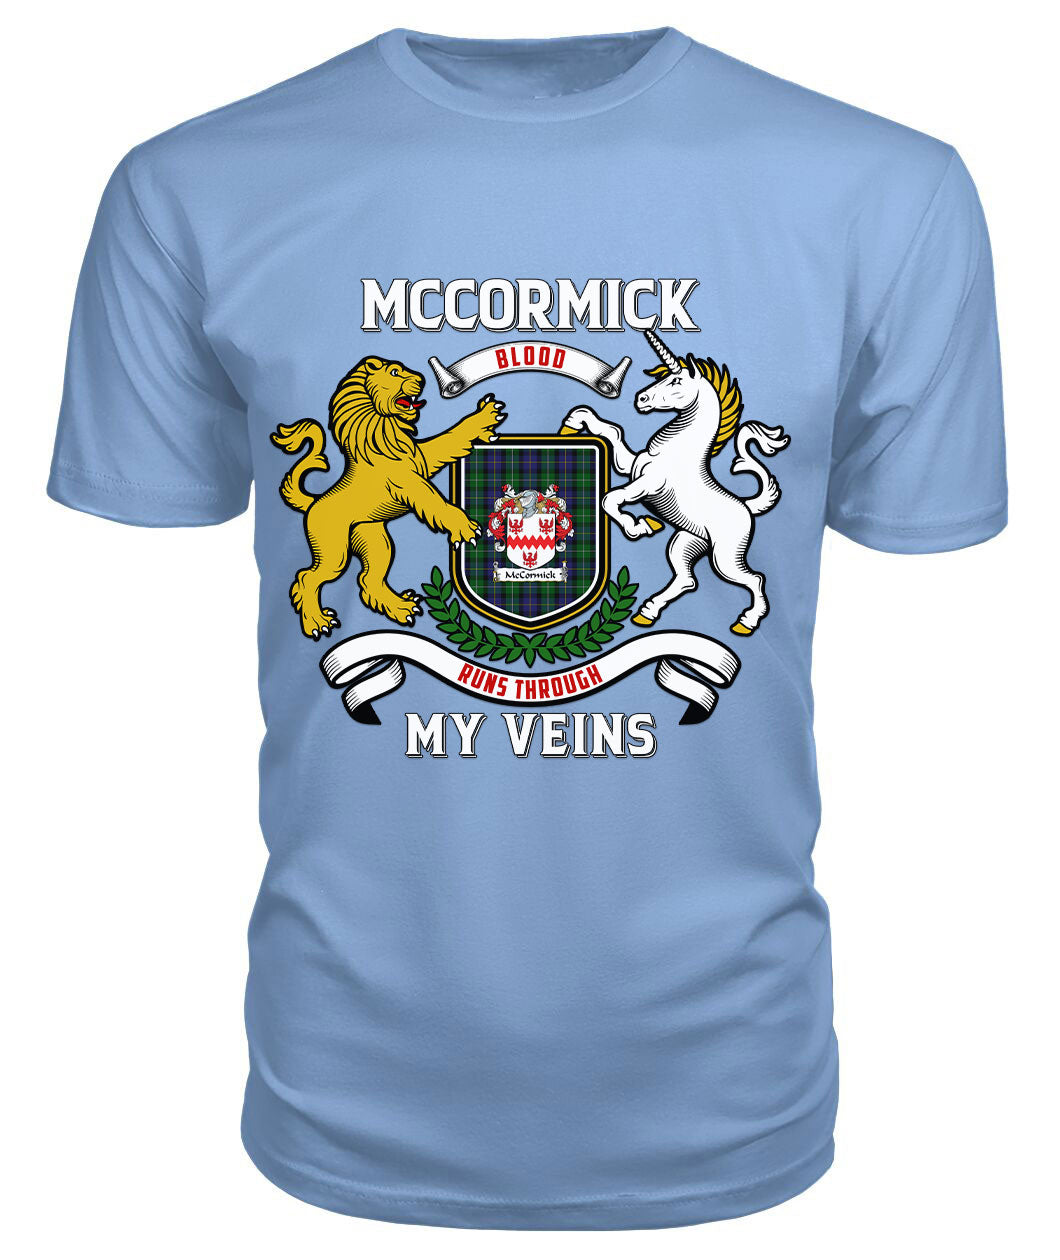 McCormick Tartan Crest 2D T-shirt - Blood Runs Through My Veins Style